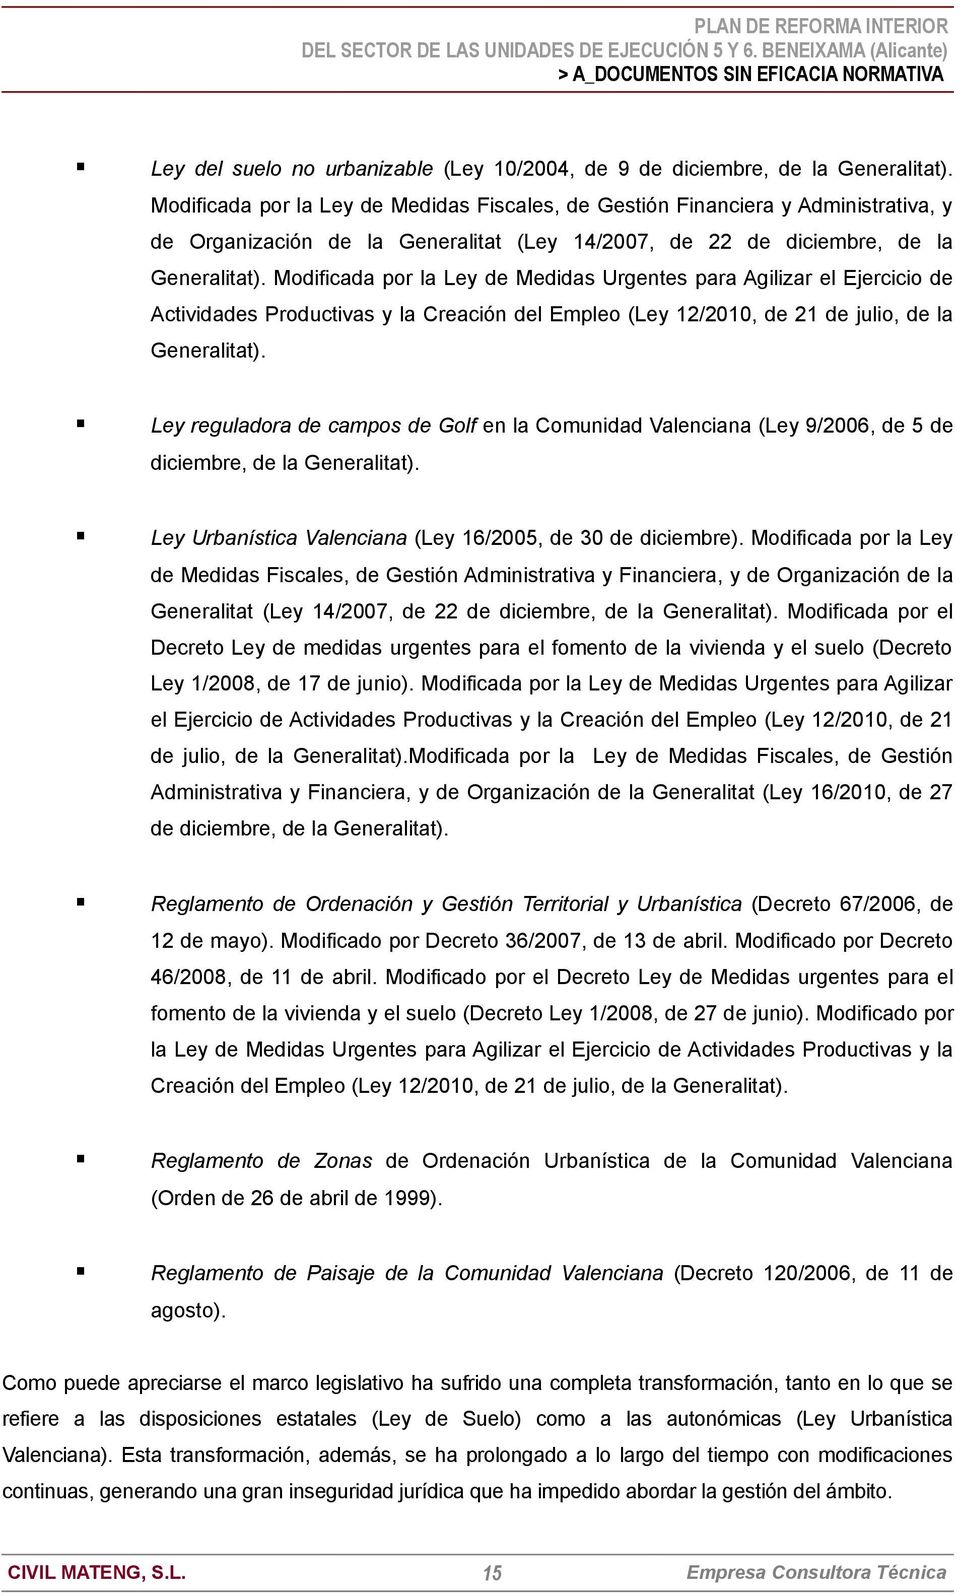 Modificada por la Ley de Medidas Urgentes para Agilizar el Ejercicio de Actividades Productivas y la Creación del Empleo (Ley 12/2010, de 21 de julio, de la Generalitat).